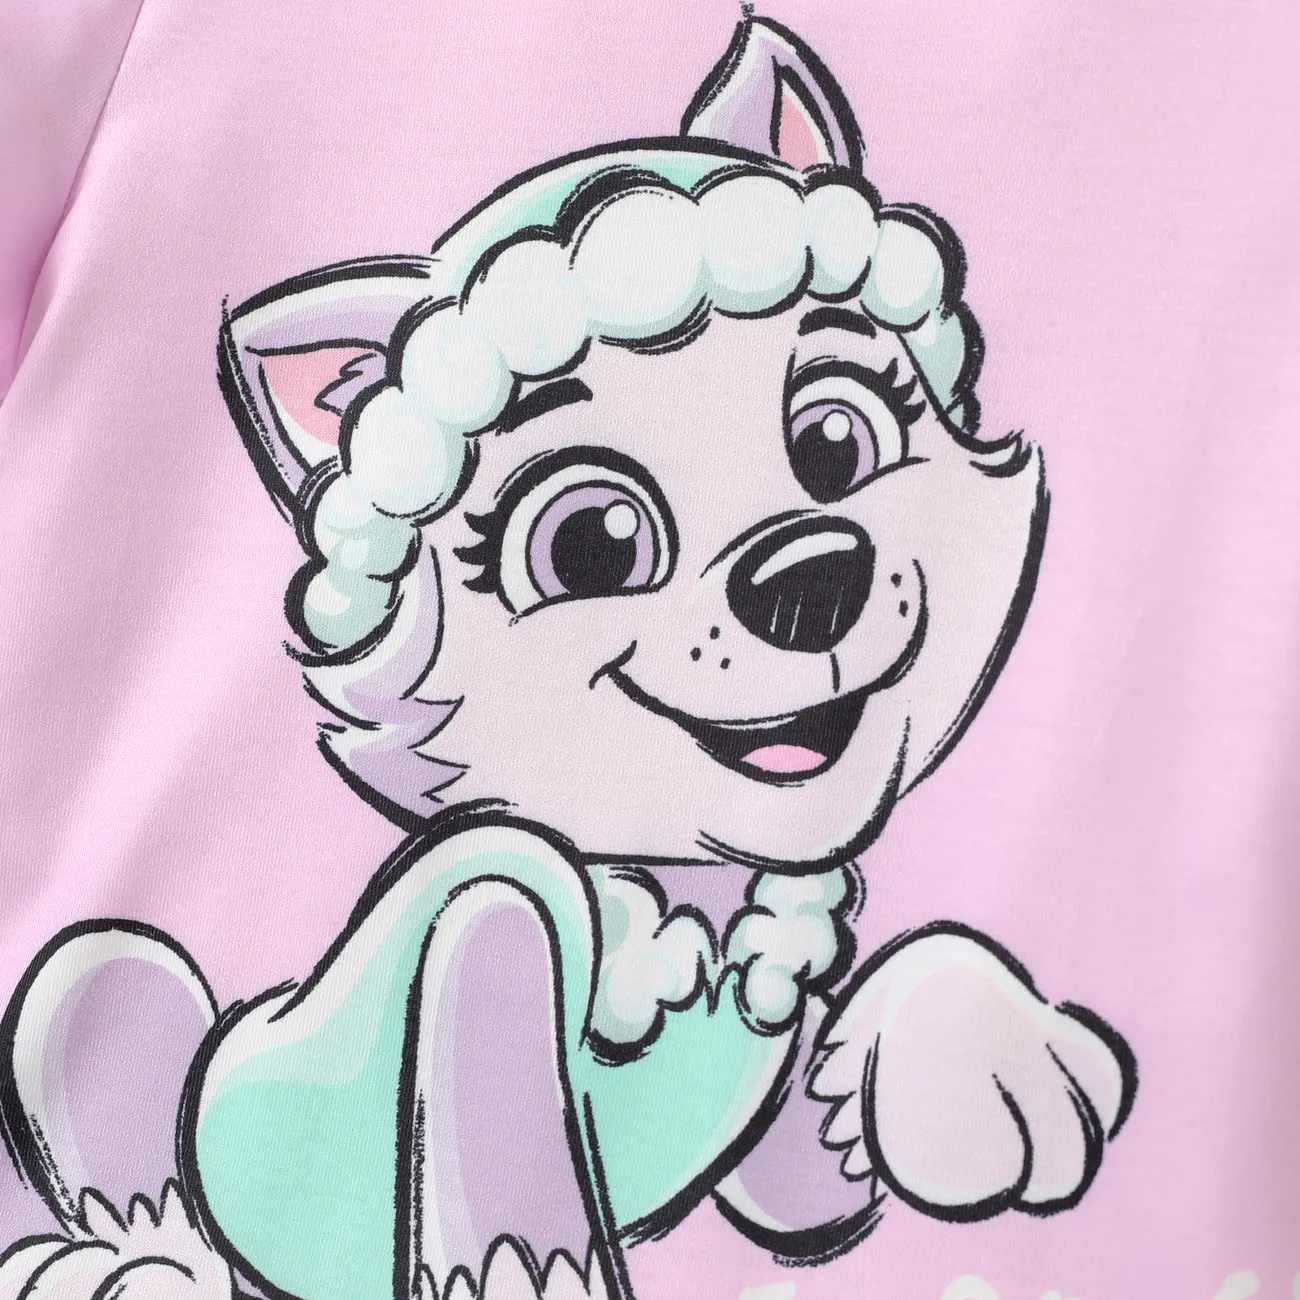 Patrulla de cachorros Pascua Unisex Infantil Camiseta Violeta claro big image 1